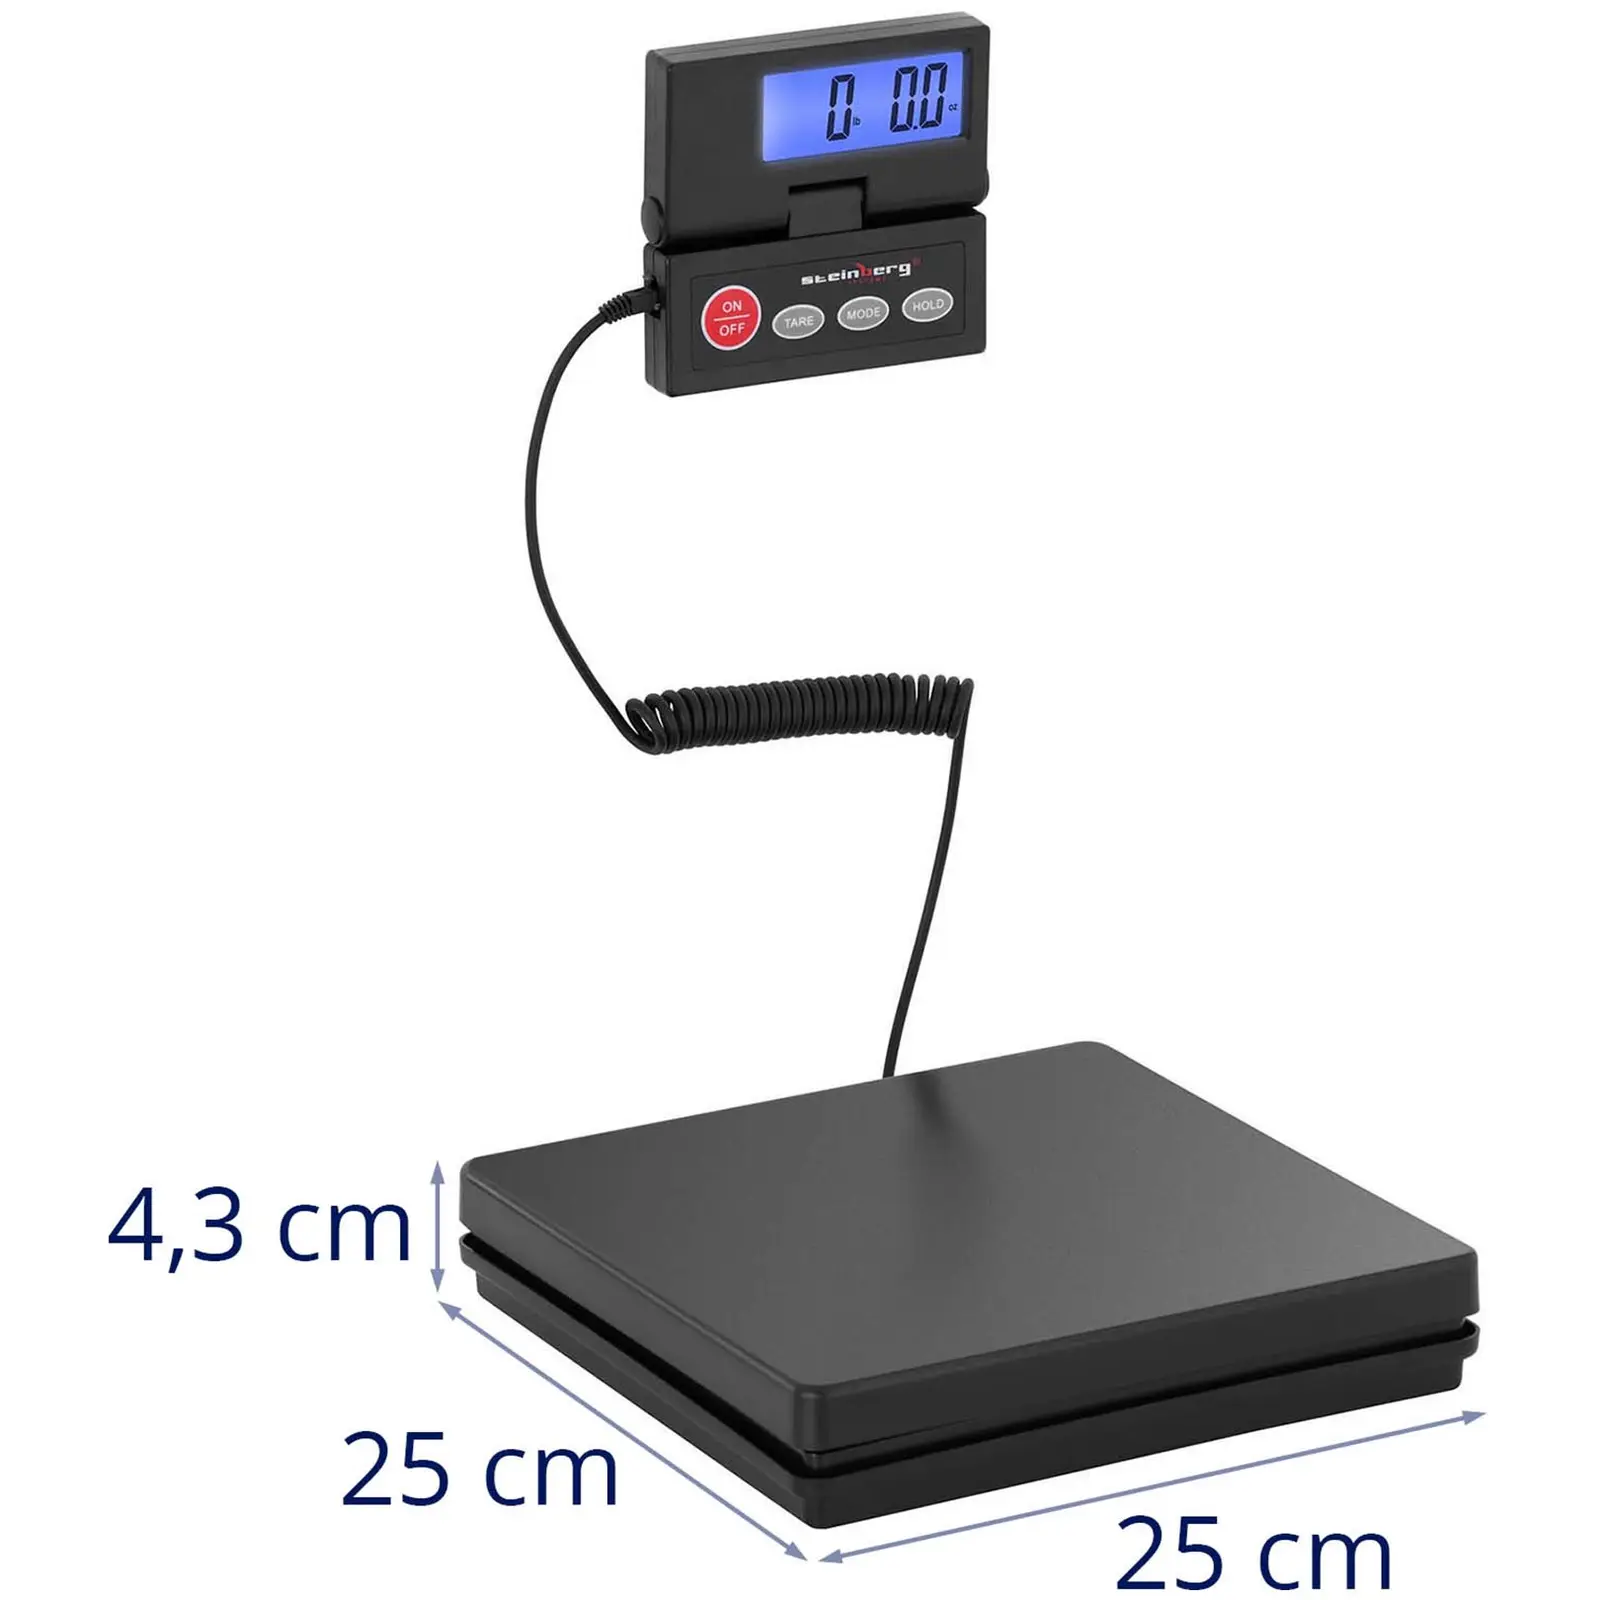 Bilancia pesapacchi digitale - 40 kg / 1 g - Basic - digital - LCD esterno